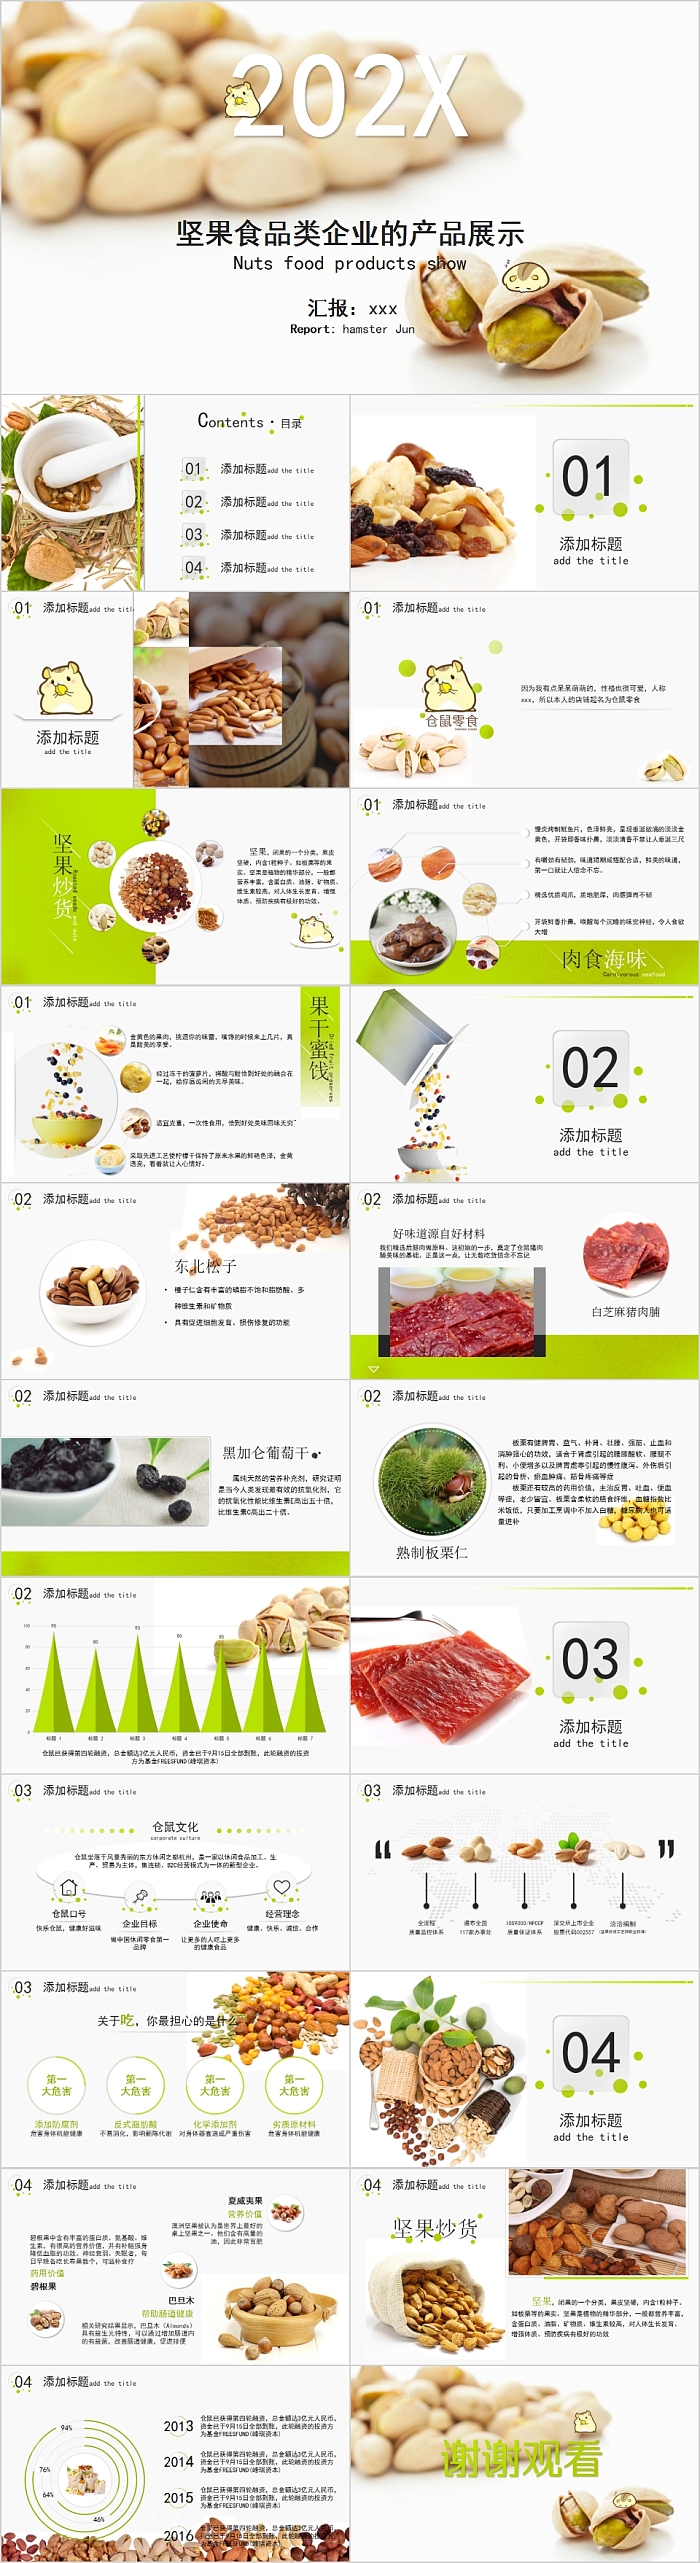 坚果食品类企业的产品展示PPT模板